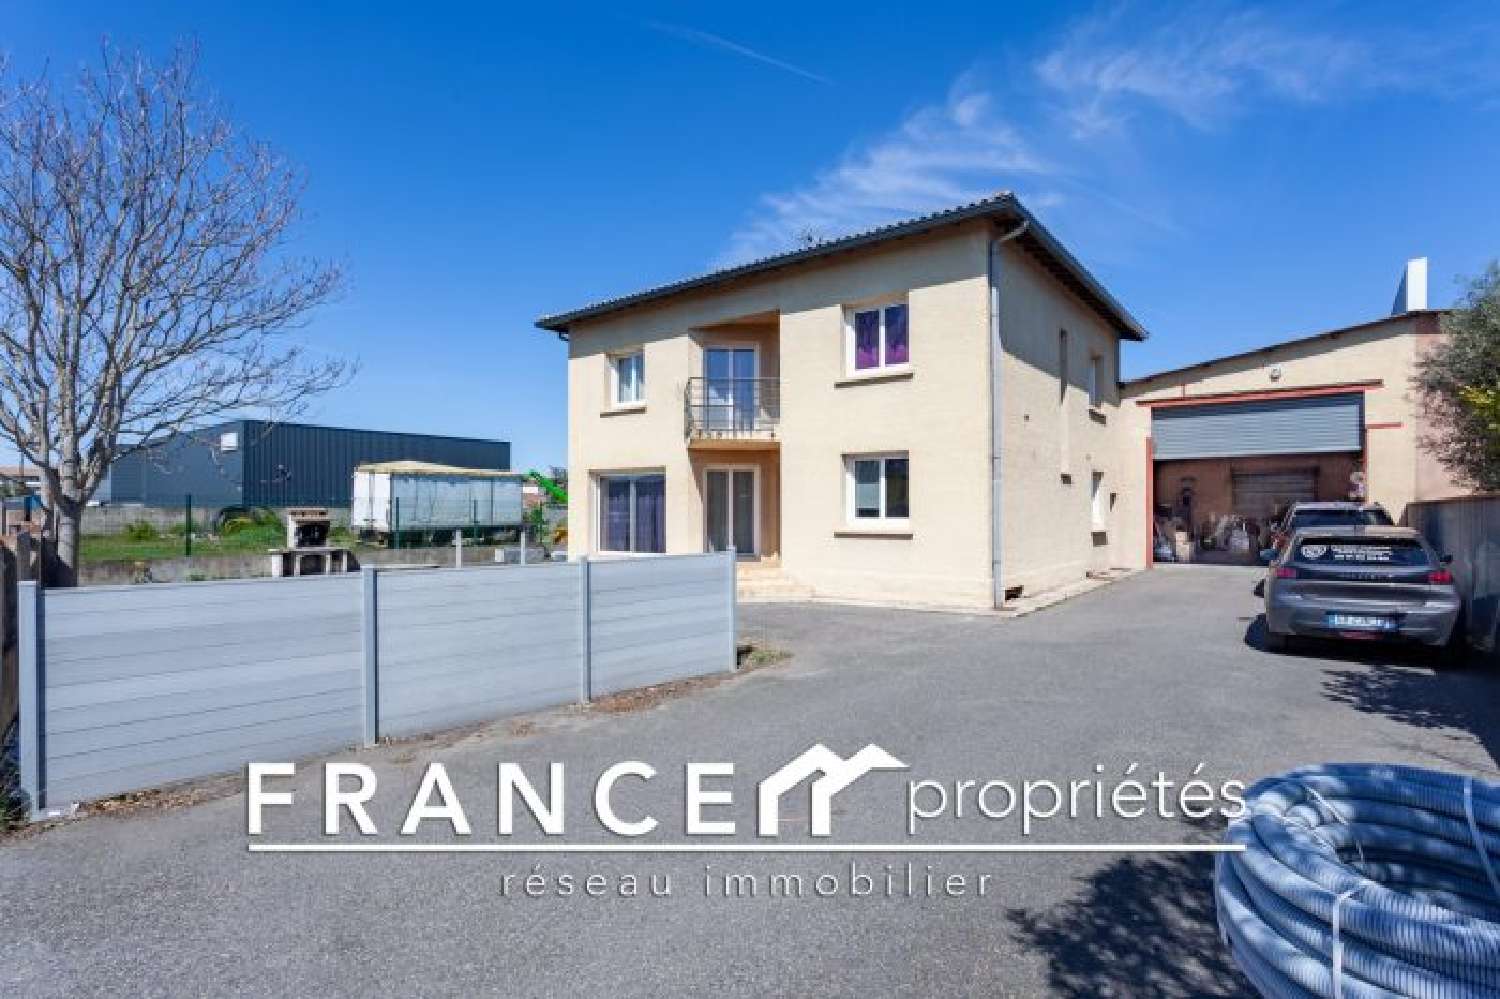  à vendre maison Cugnaux Haute-Garonne 4